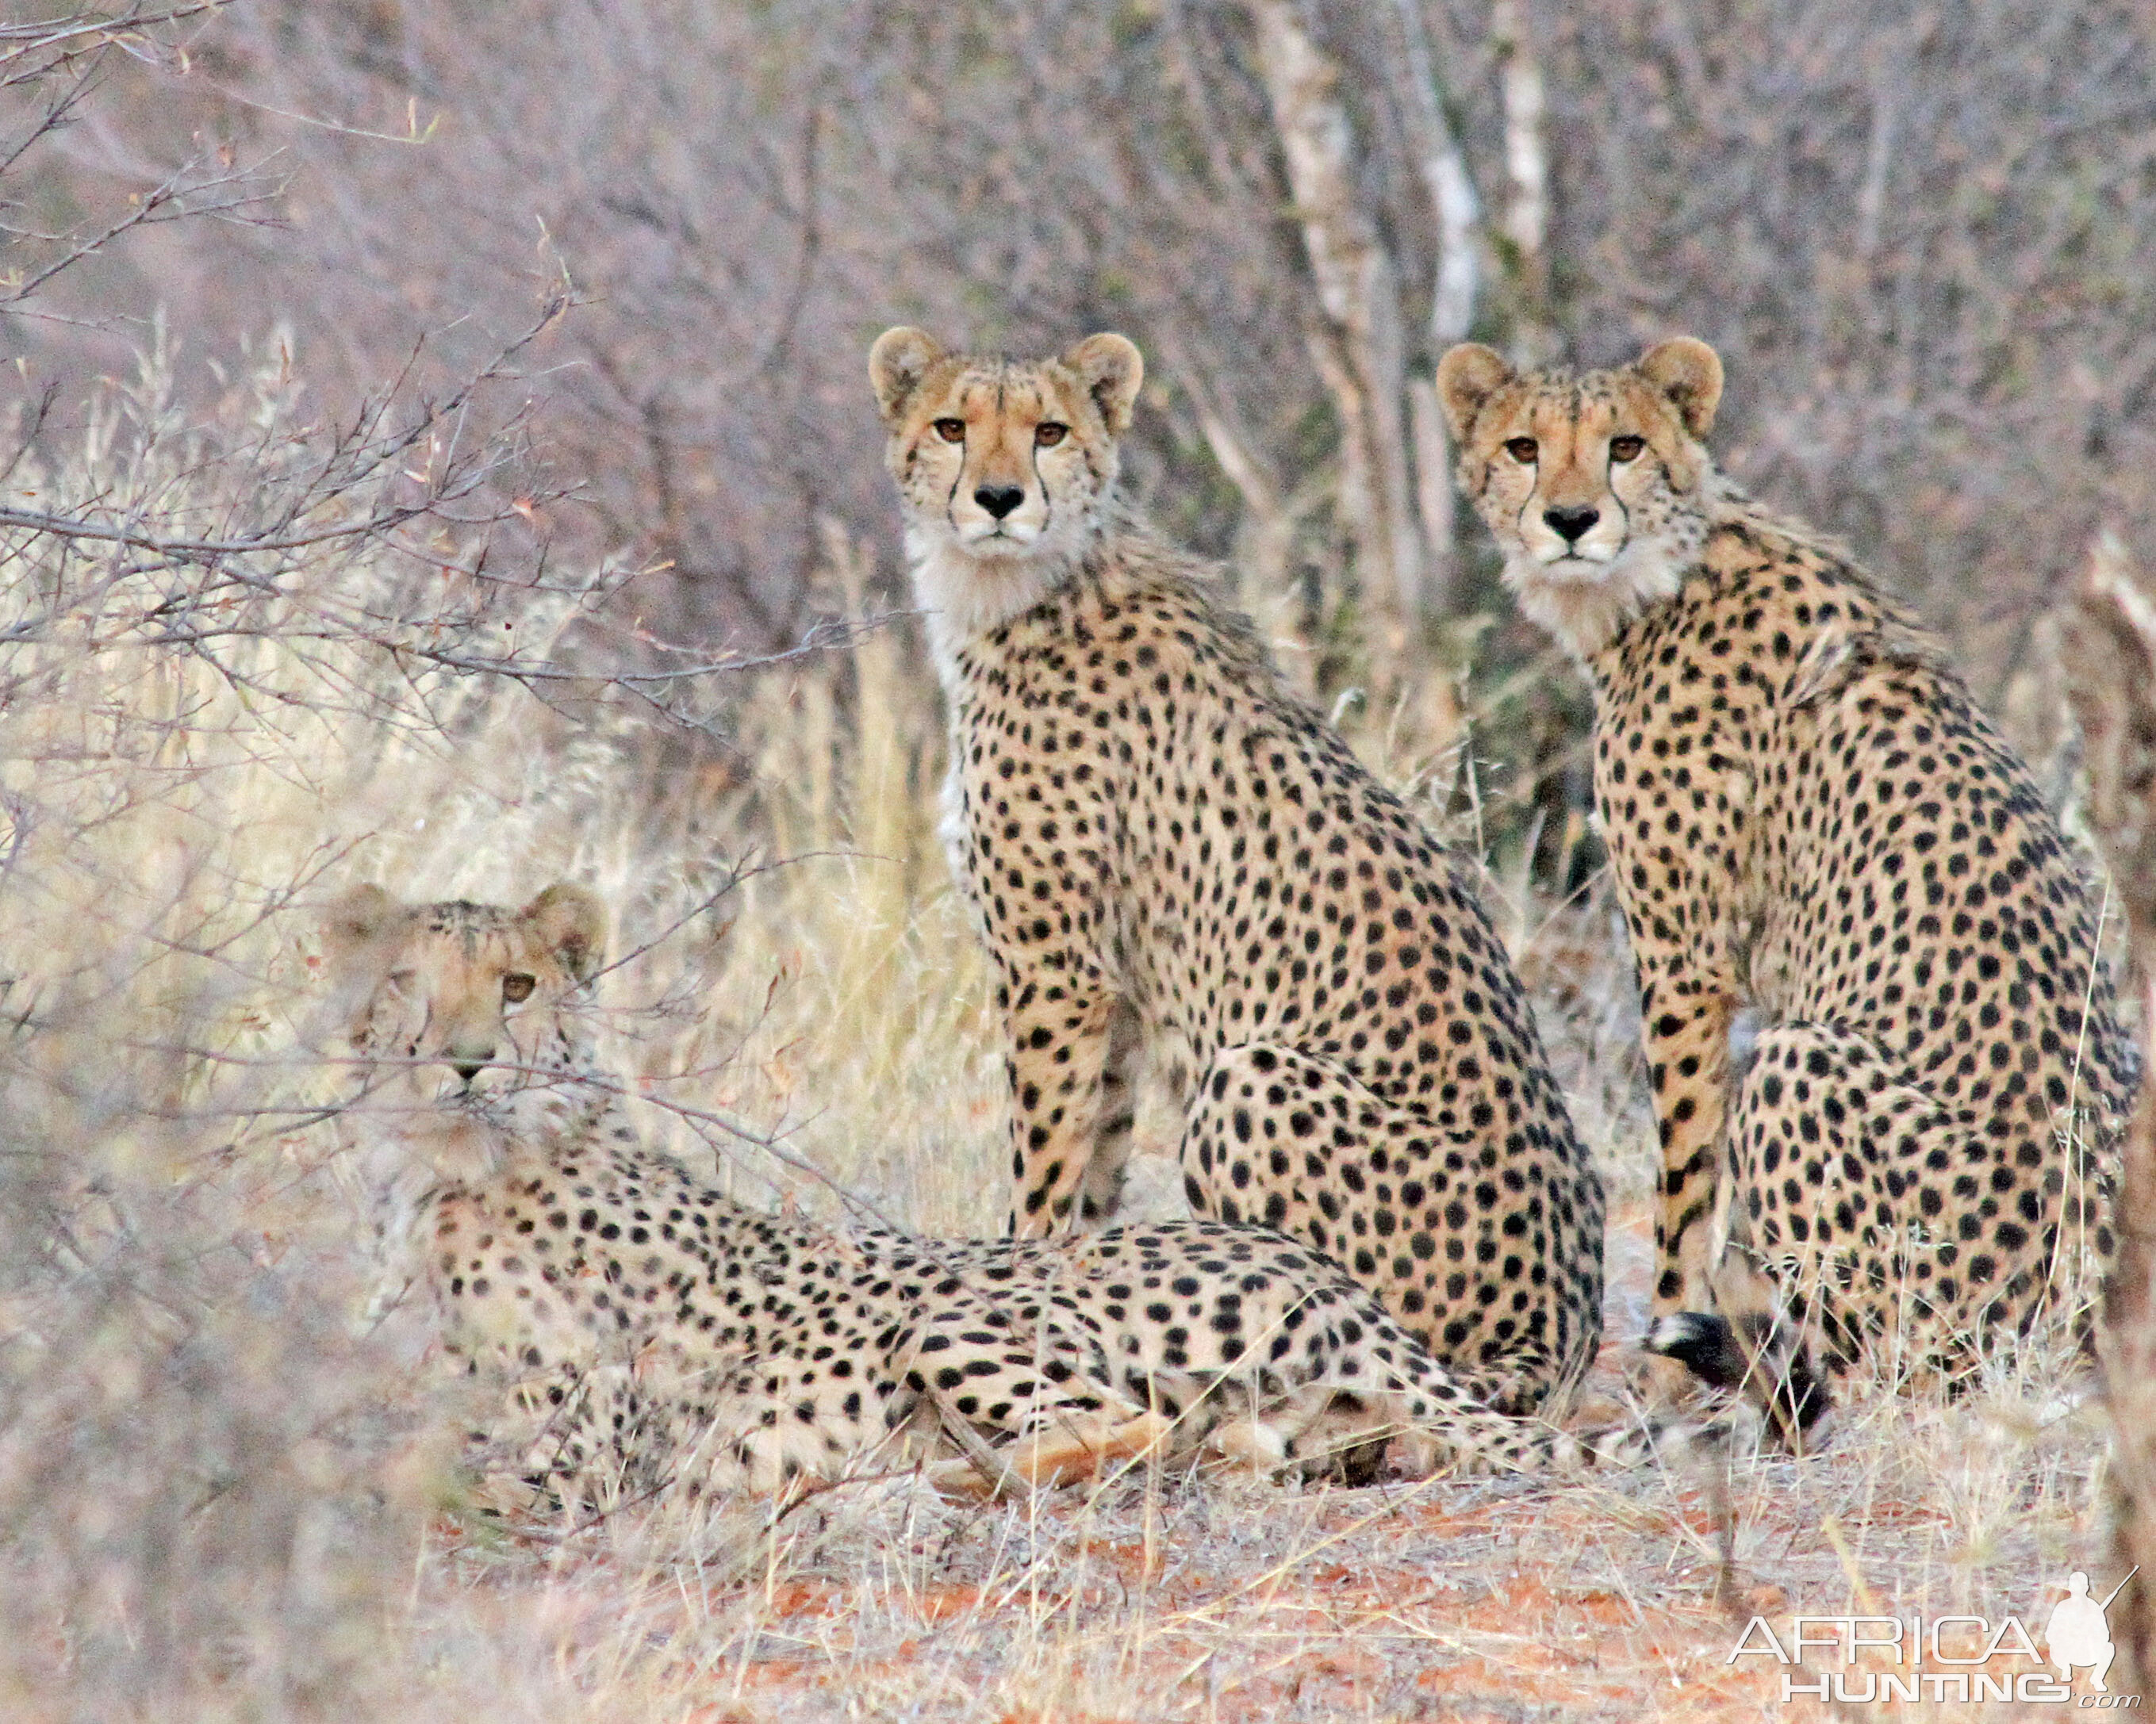 3 Cheetah Stunners!